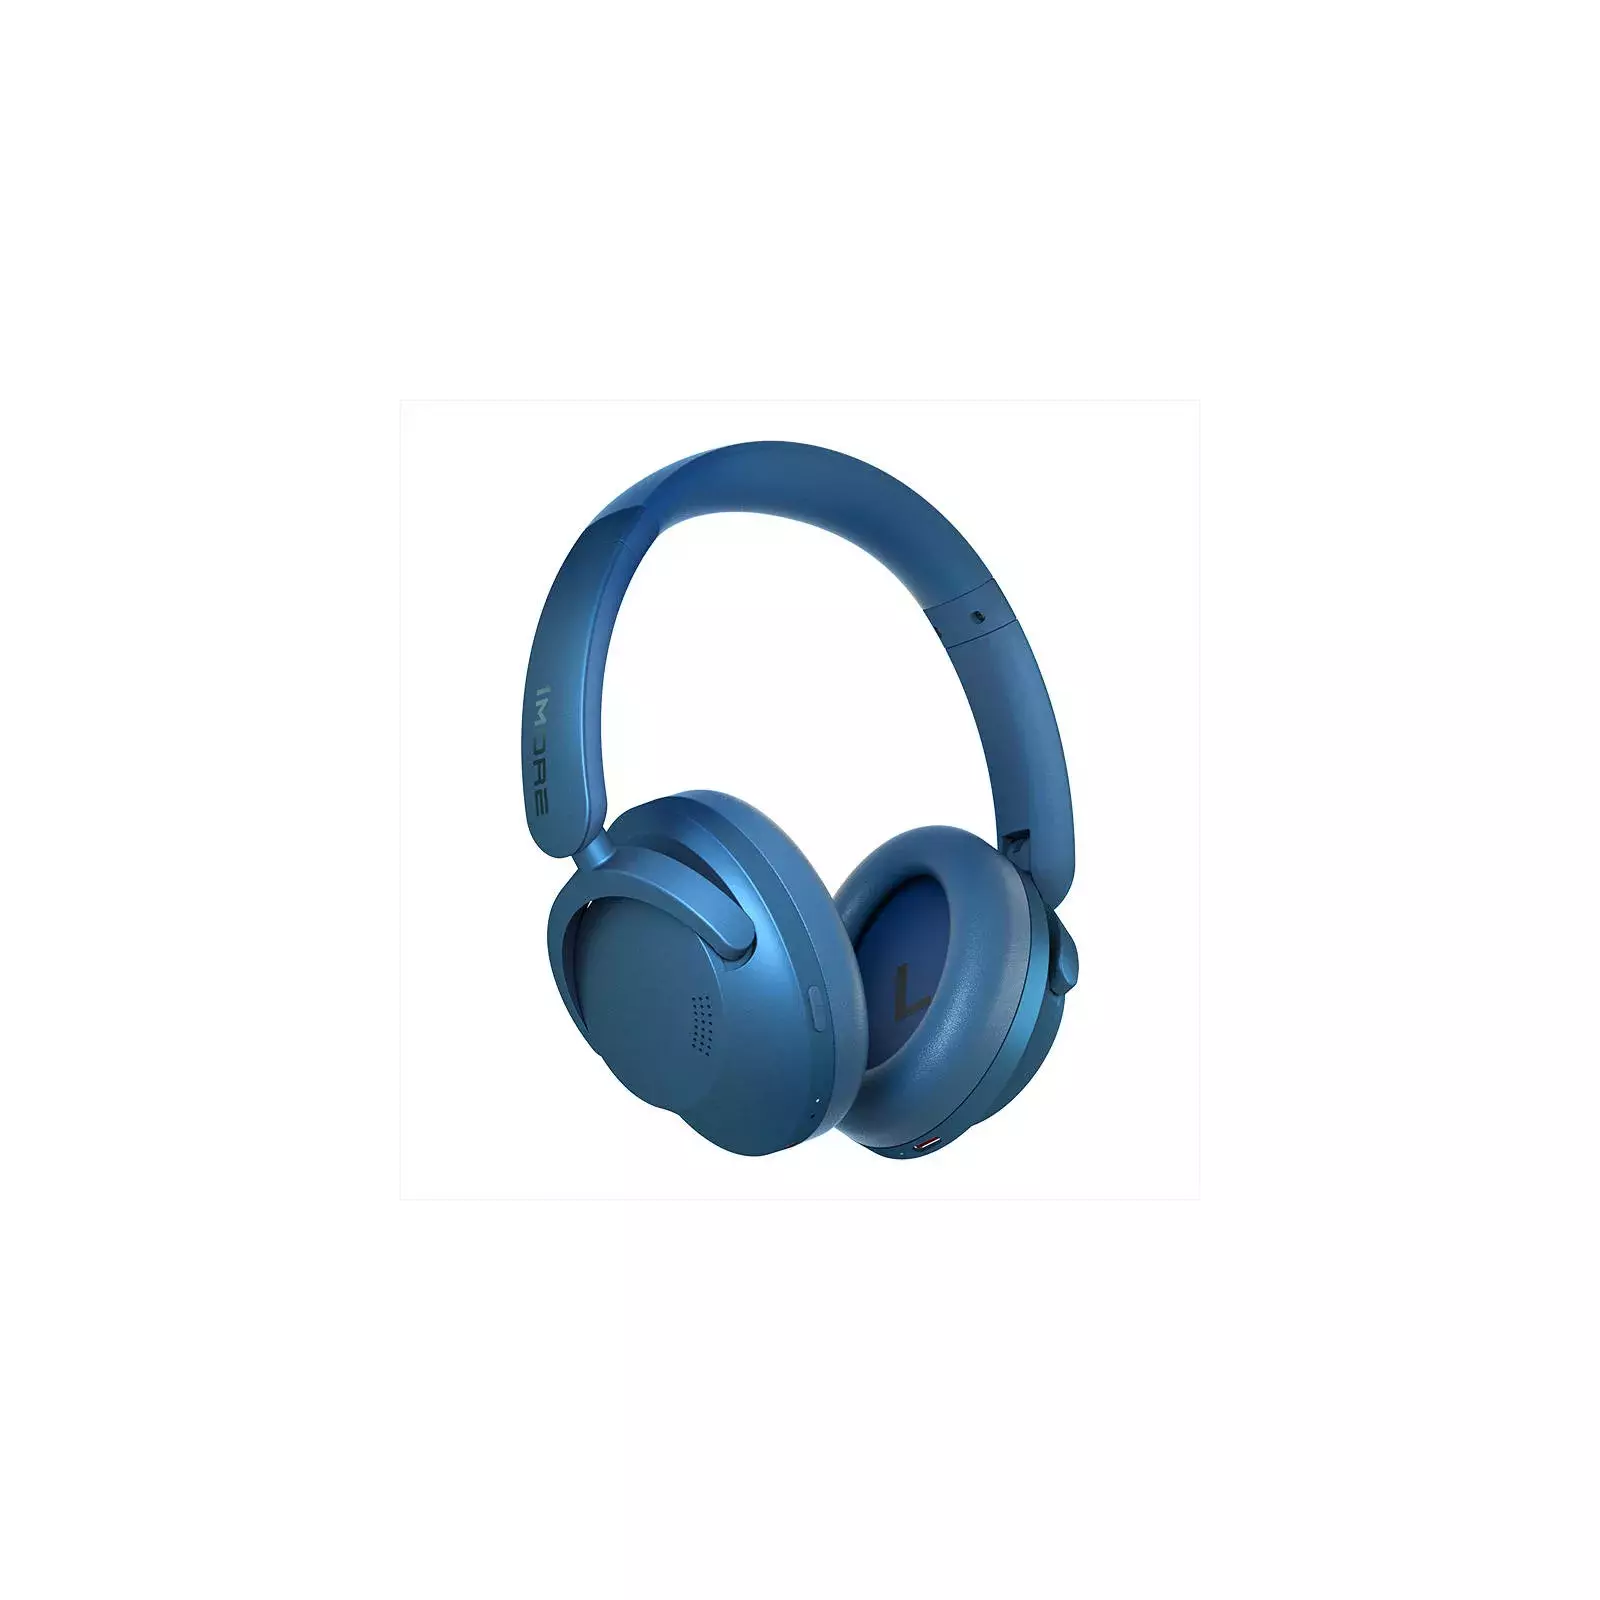 1More's new SonoFlow LDAC headphones get 50 hours of play